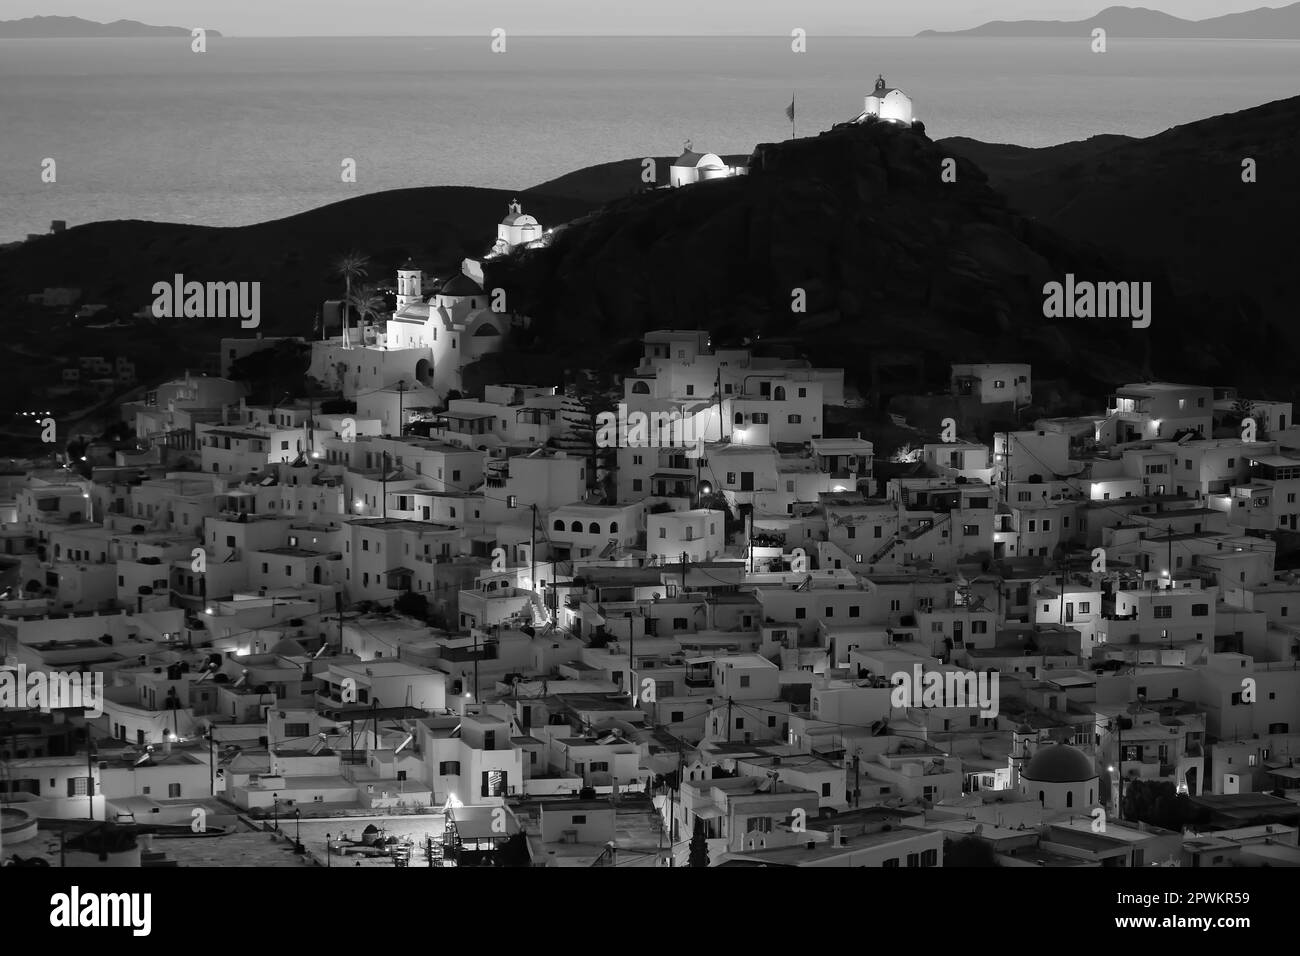 Magnifique coucher de soleil et vue panoramique sur l'île pittoresque et blanchie à la chaux d'iOS Grèce en noir et blanc Banque D'Images